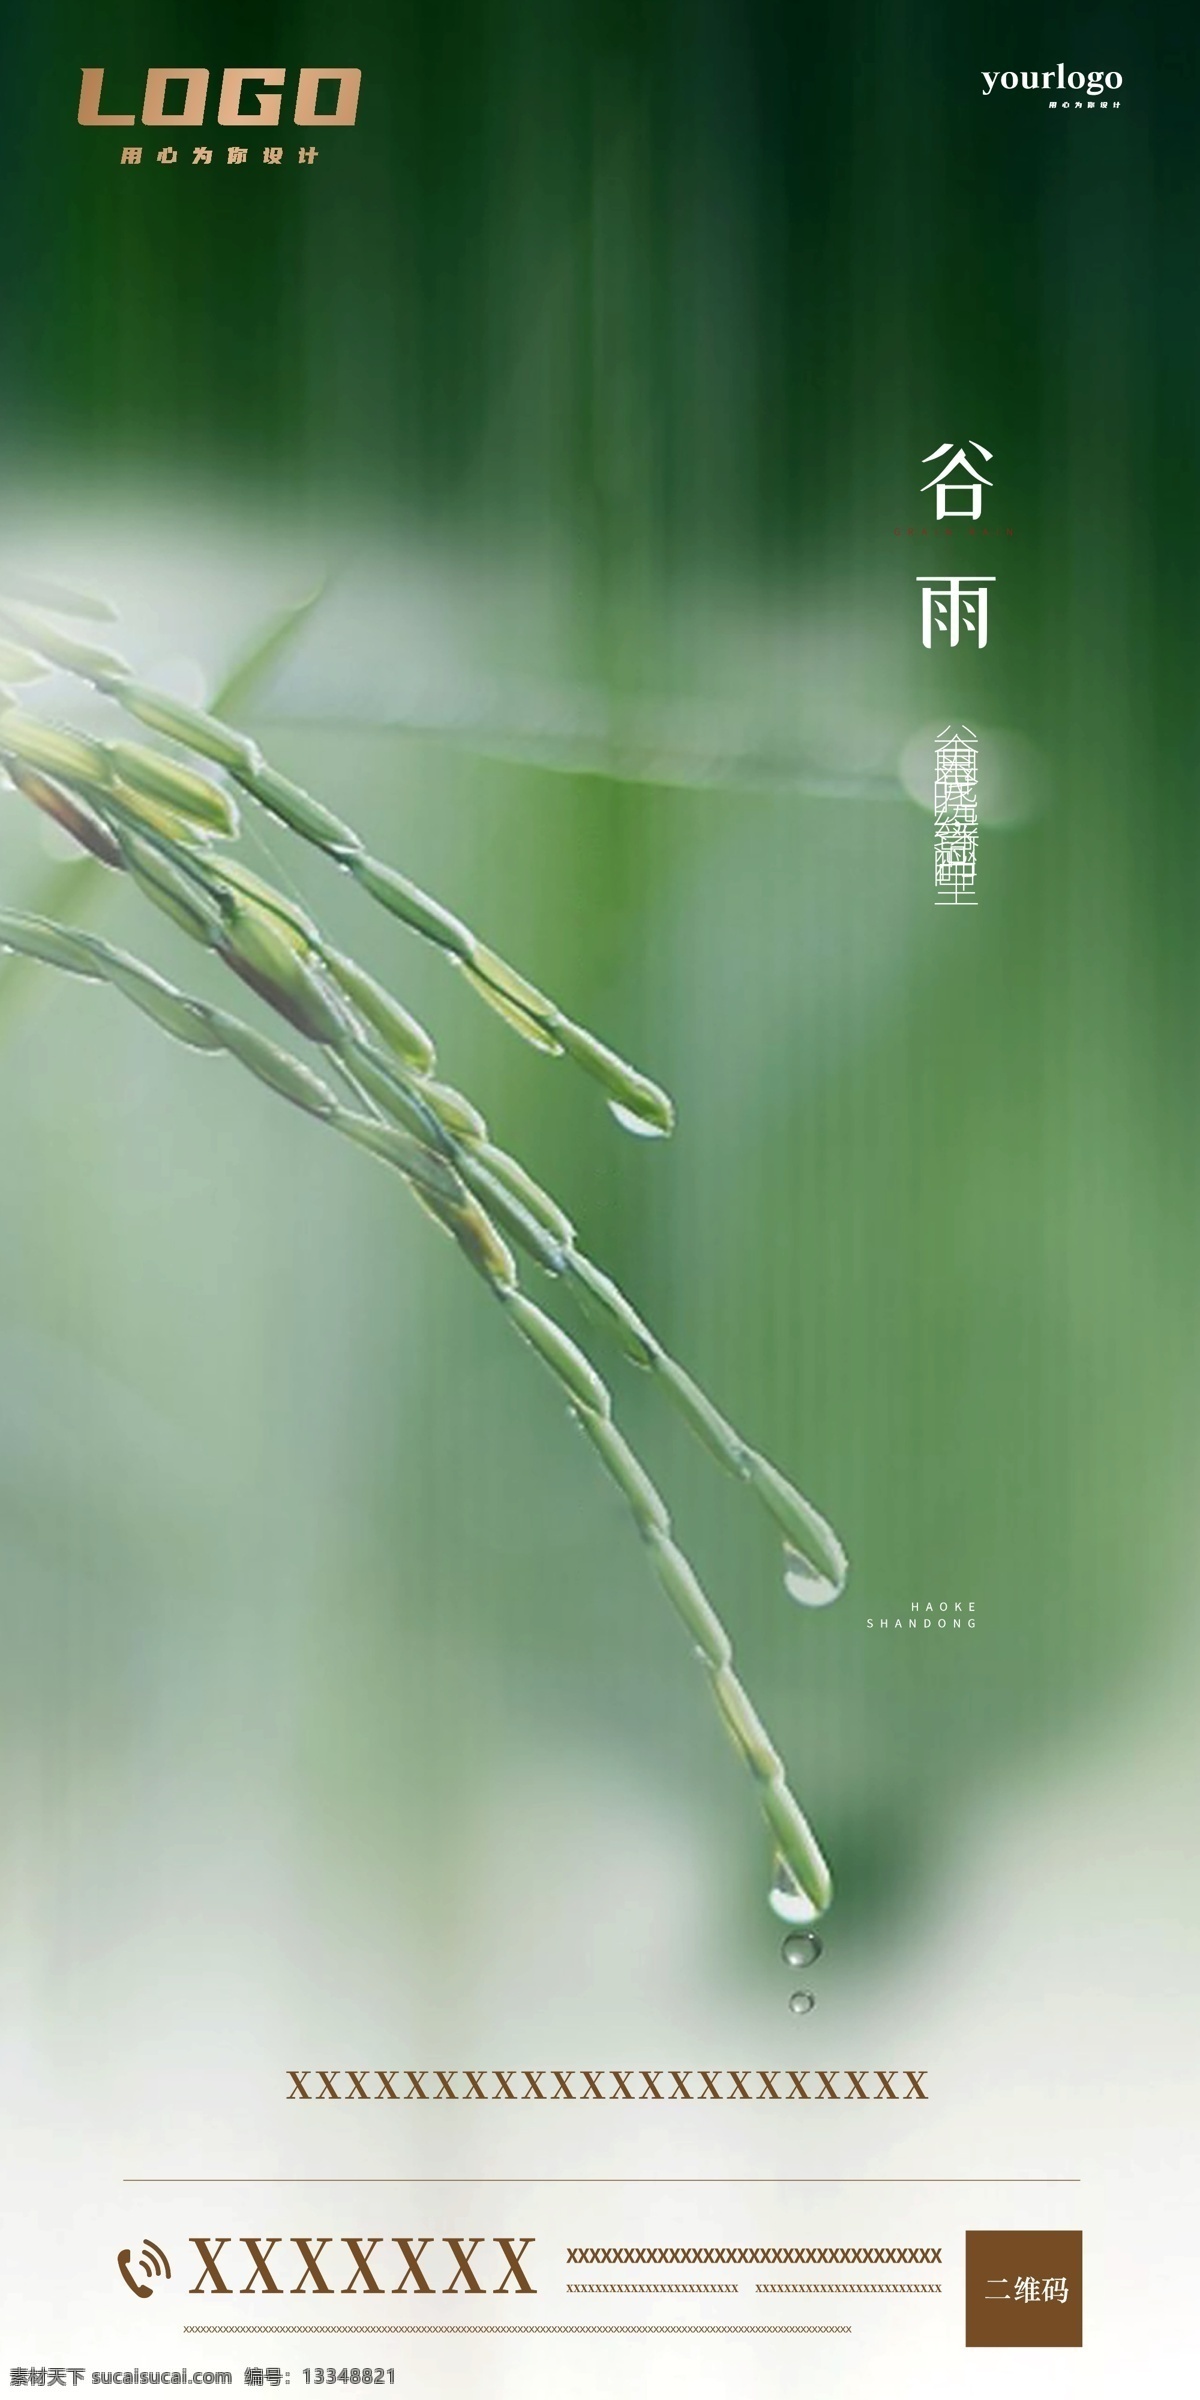 谷雨 雨水 地产微信 地产 微信图 传统节气 地产广告